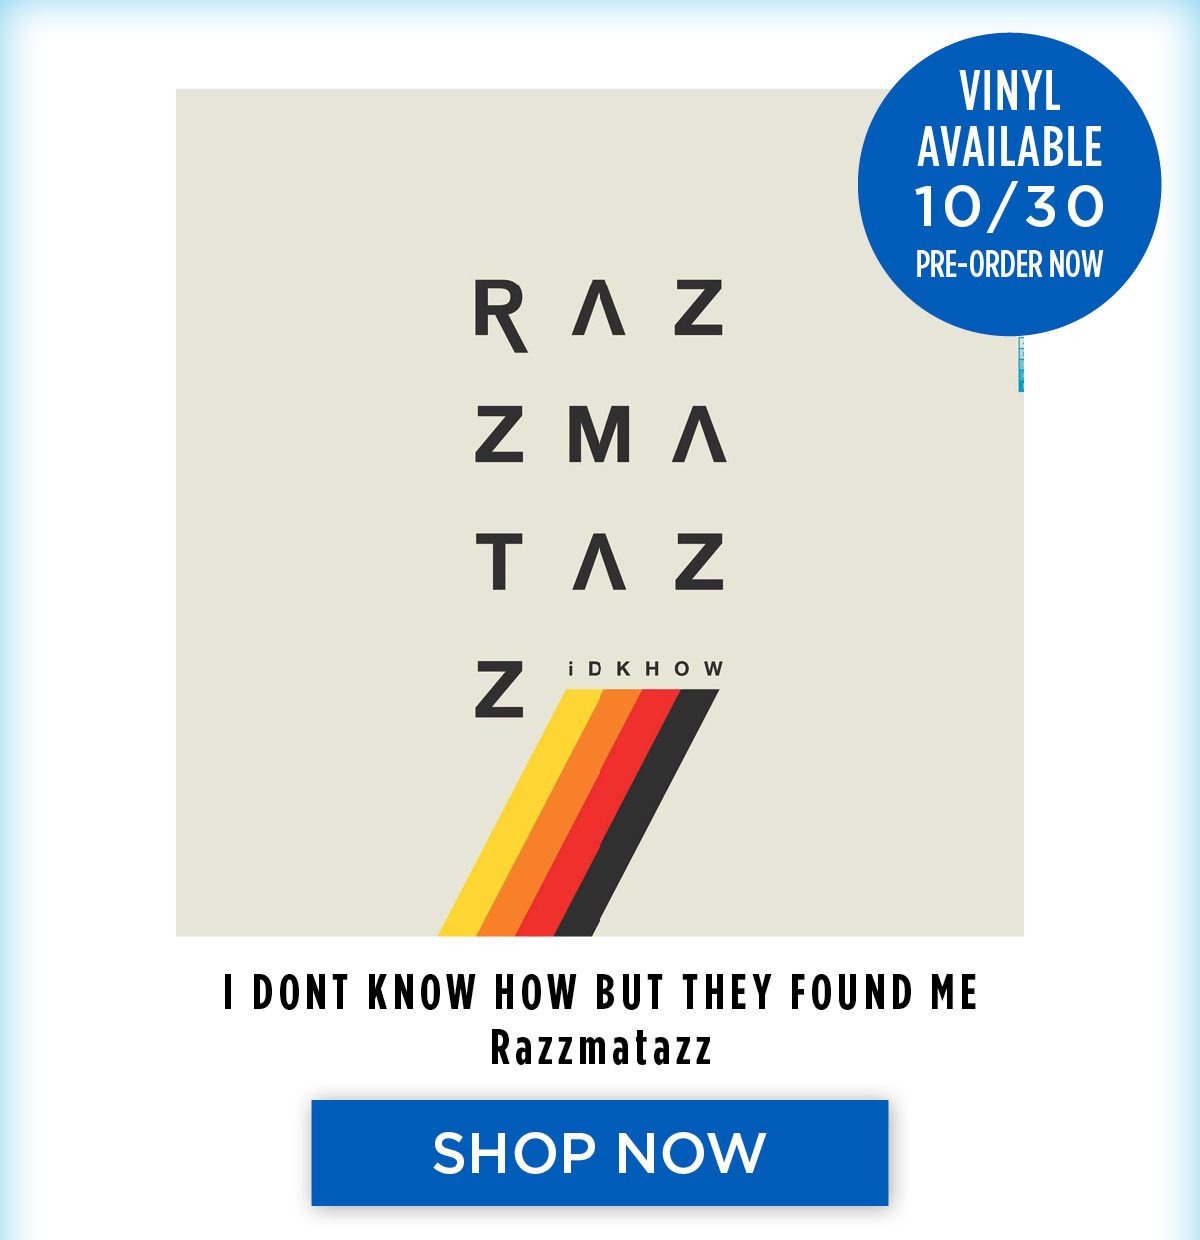 I Don't Know How But They Found Me - Razzmatazz